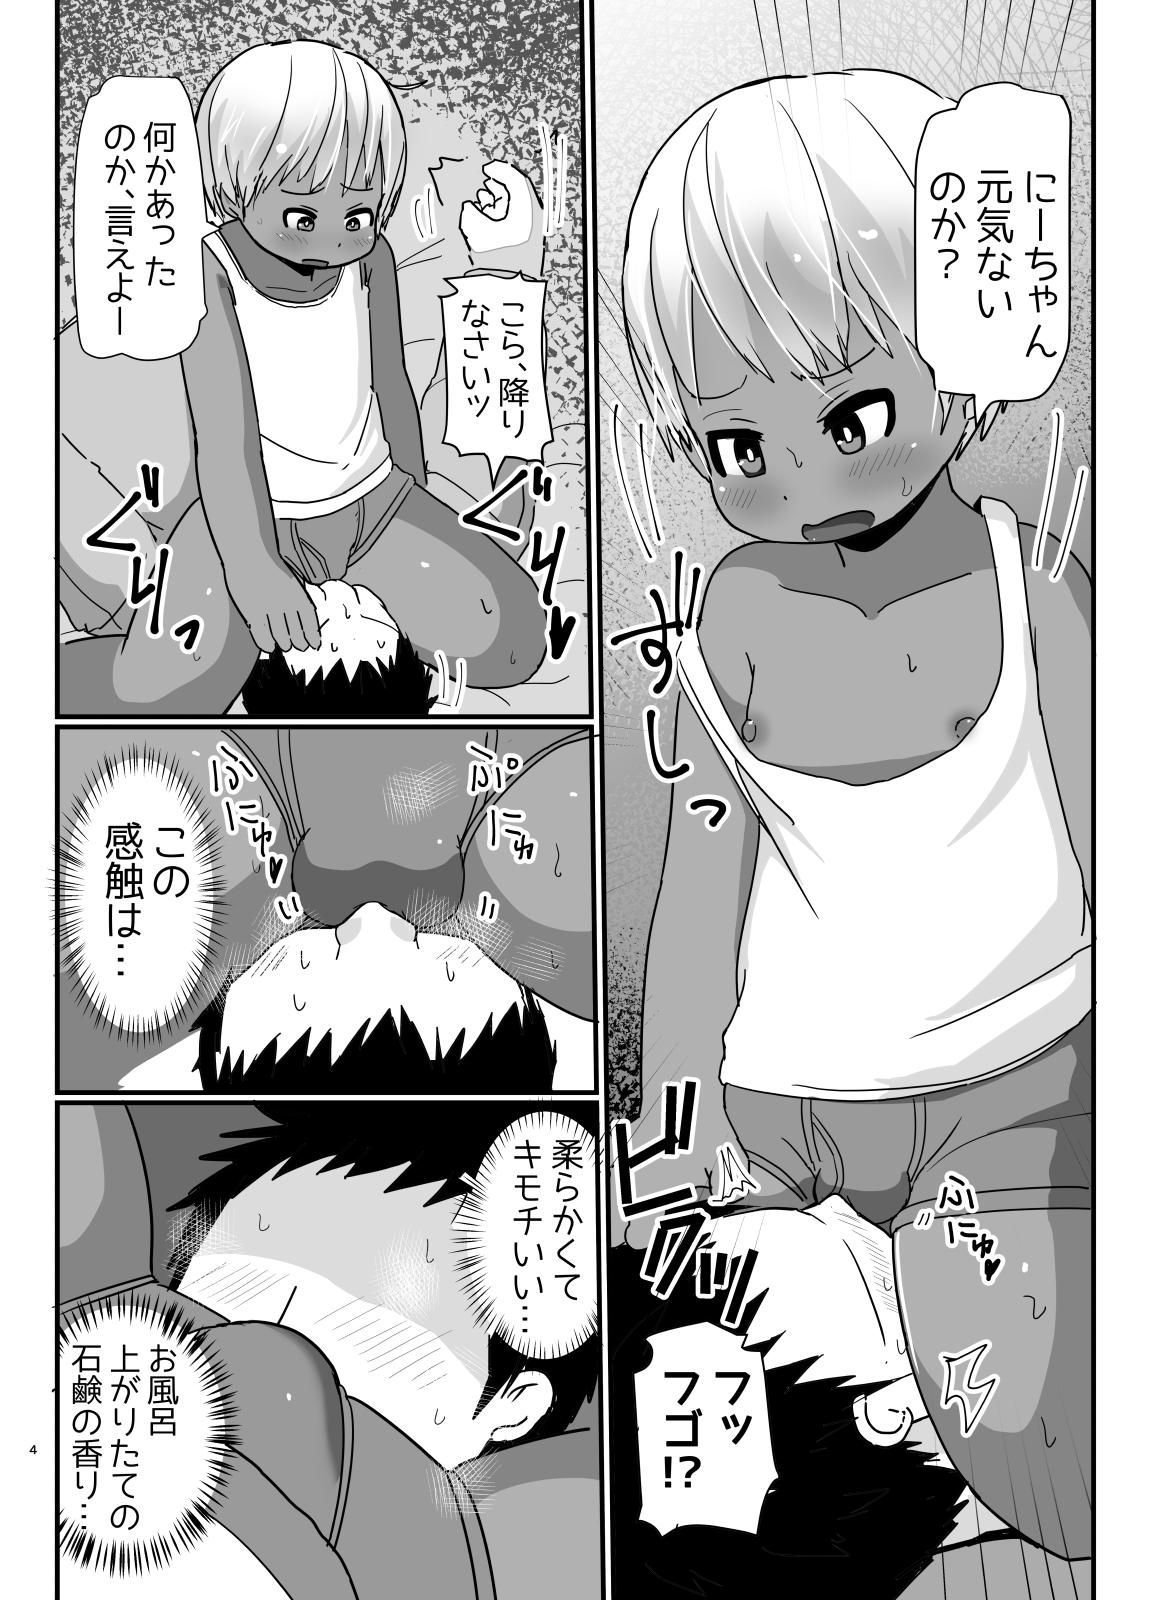 Bunny Cos no Kasshokukko♂ ga Genkidzukete Kureru Manga 2